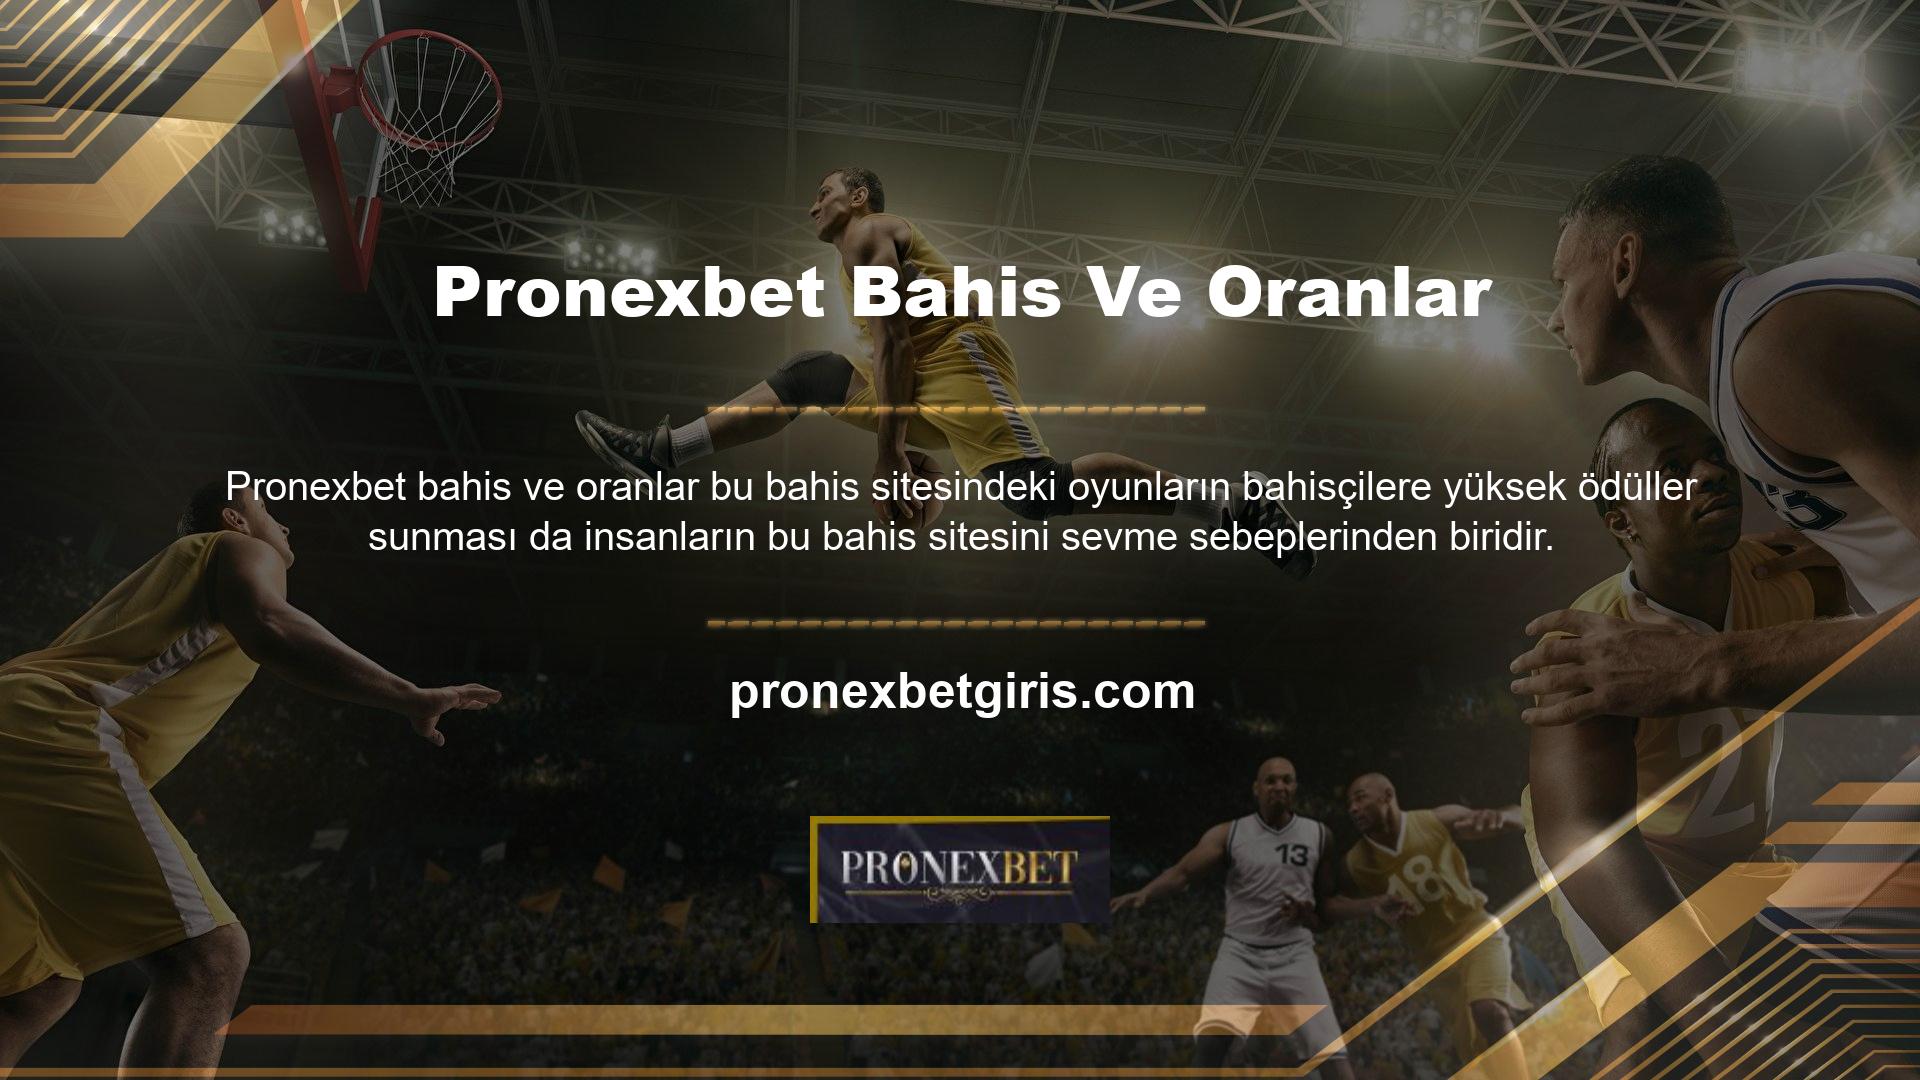 Pronexbet bahis siteleri diğer bahis sitelerine göre daha popülerdir ve en popüler online bahis siteleri arasında yer almaktadır